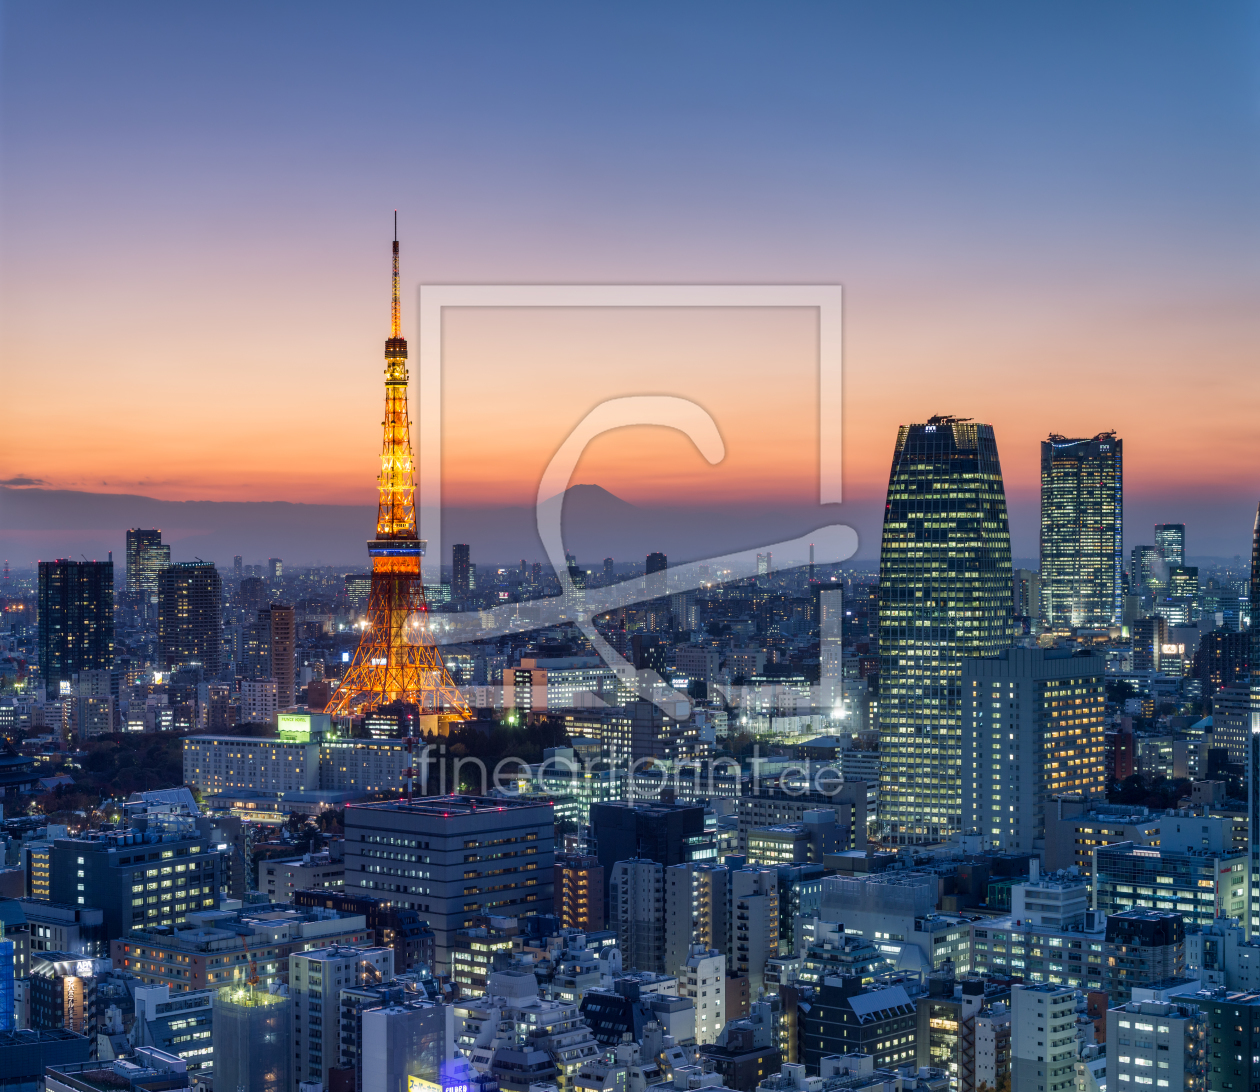 Bild-Nr.: 12230072 Tokyo Tower und Berg Fuji am Abend erstellt von eyetronic